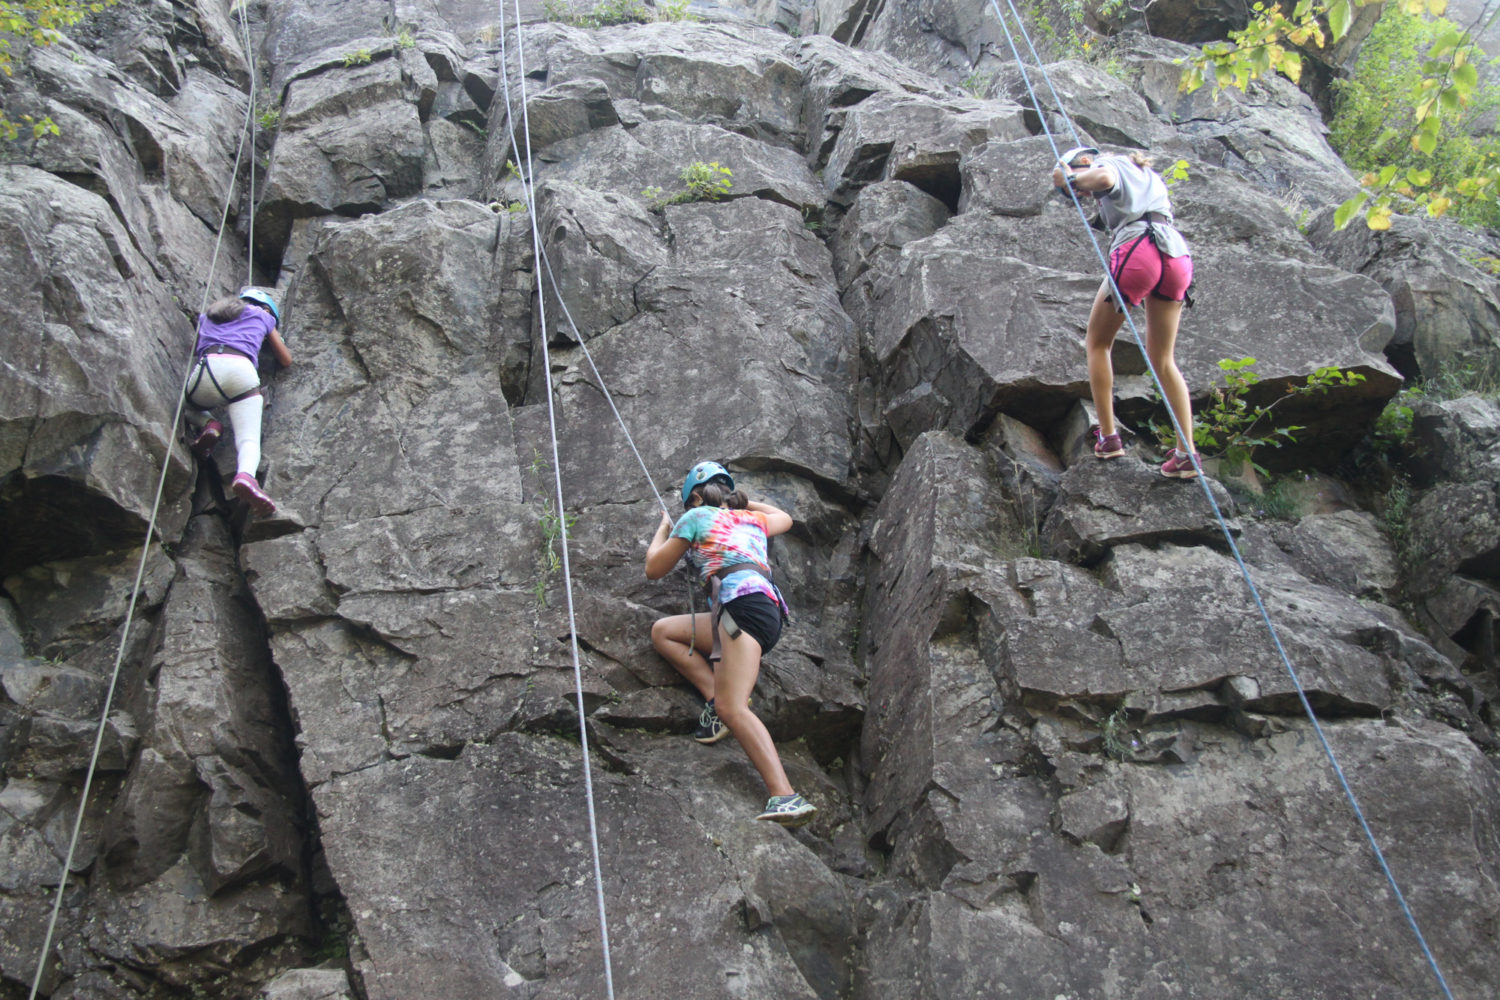 Camp Thunderbird kids climbing a rock face during adventure camp